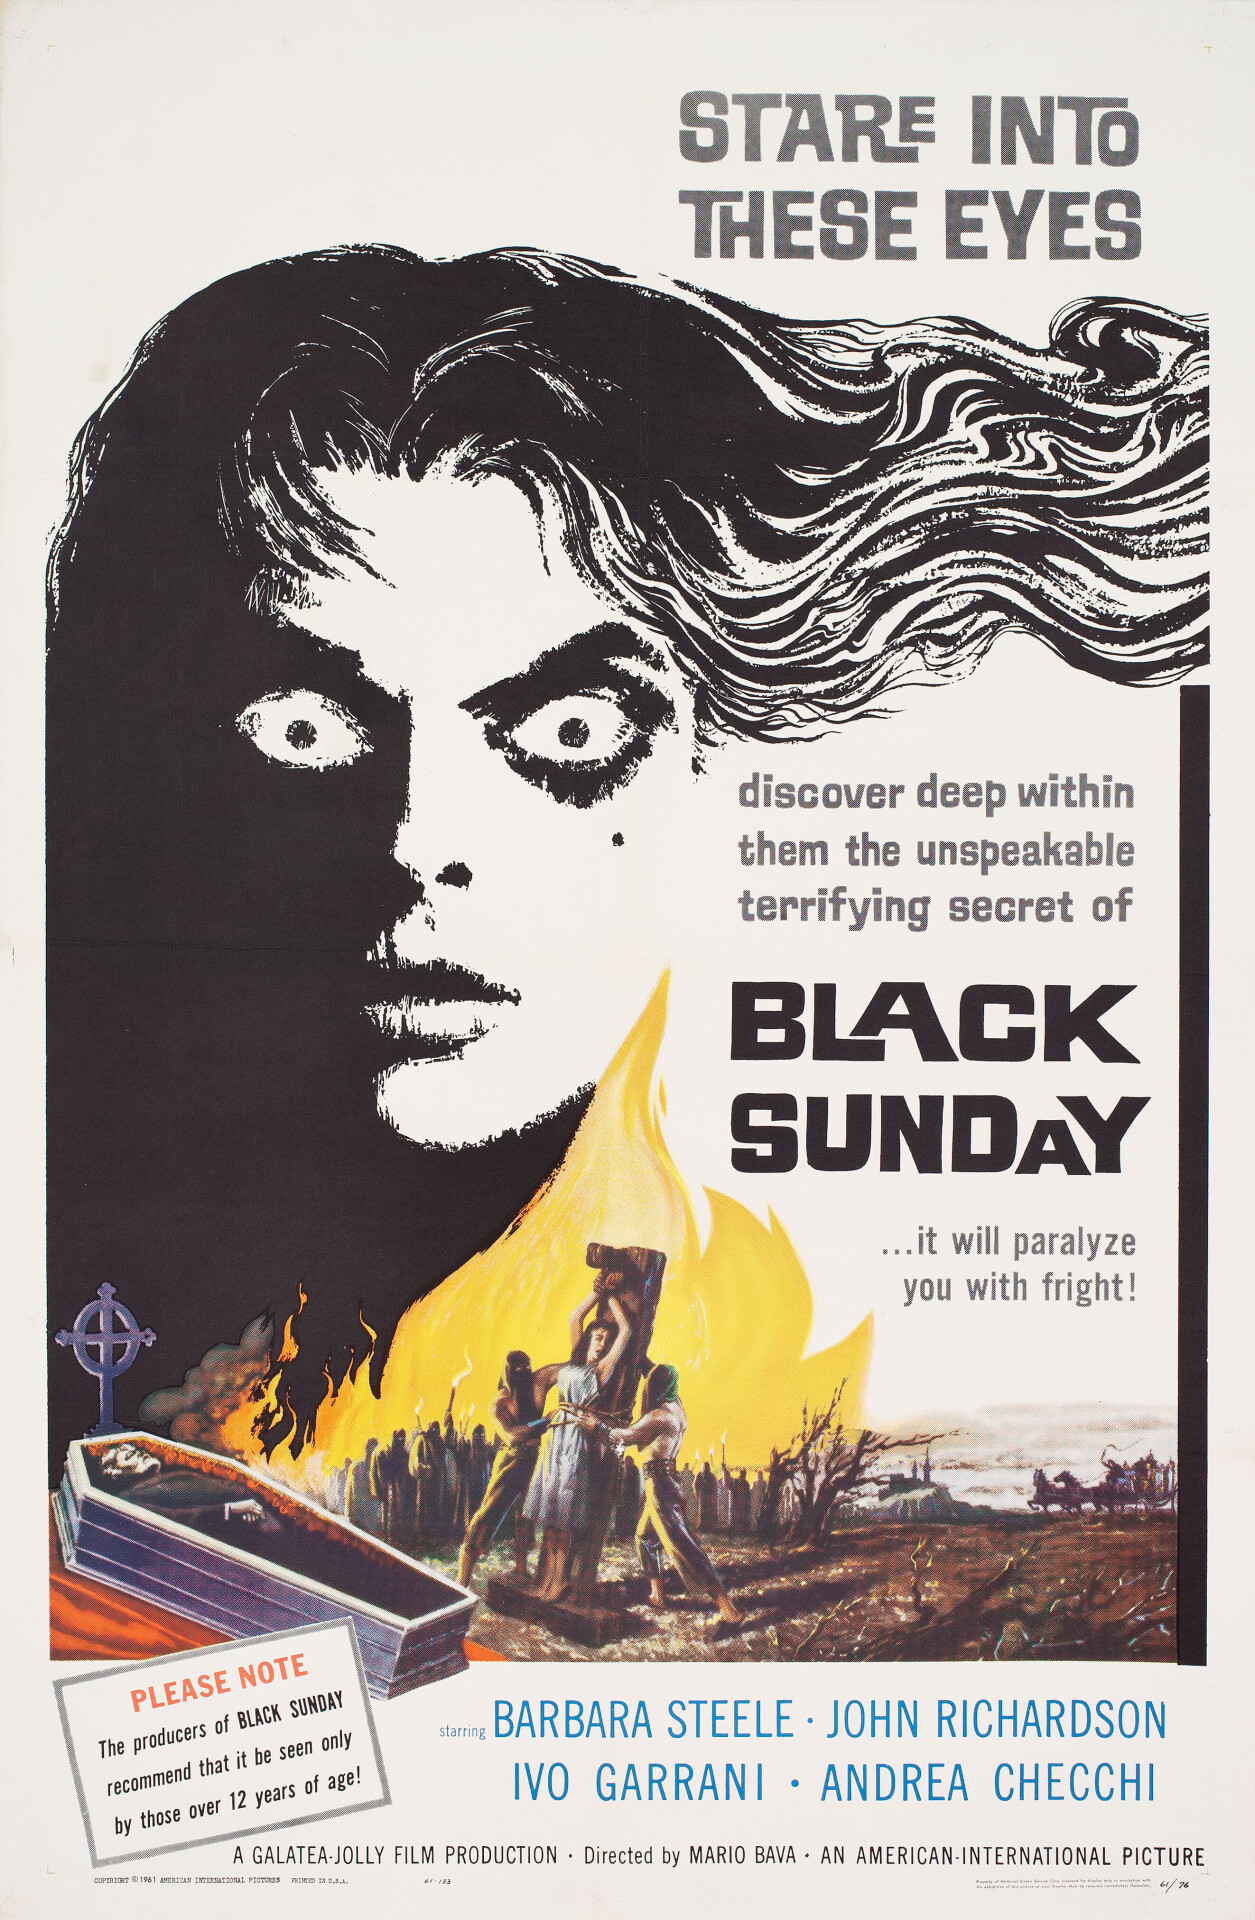 Маска Сатаны (Black Sunday, 1960), режиссёр Марио Бава, американский постер к фильму (ужасы, 1961 год)